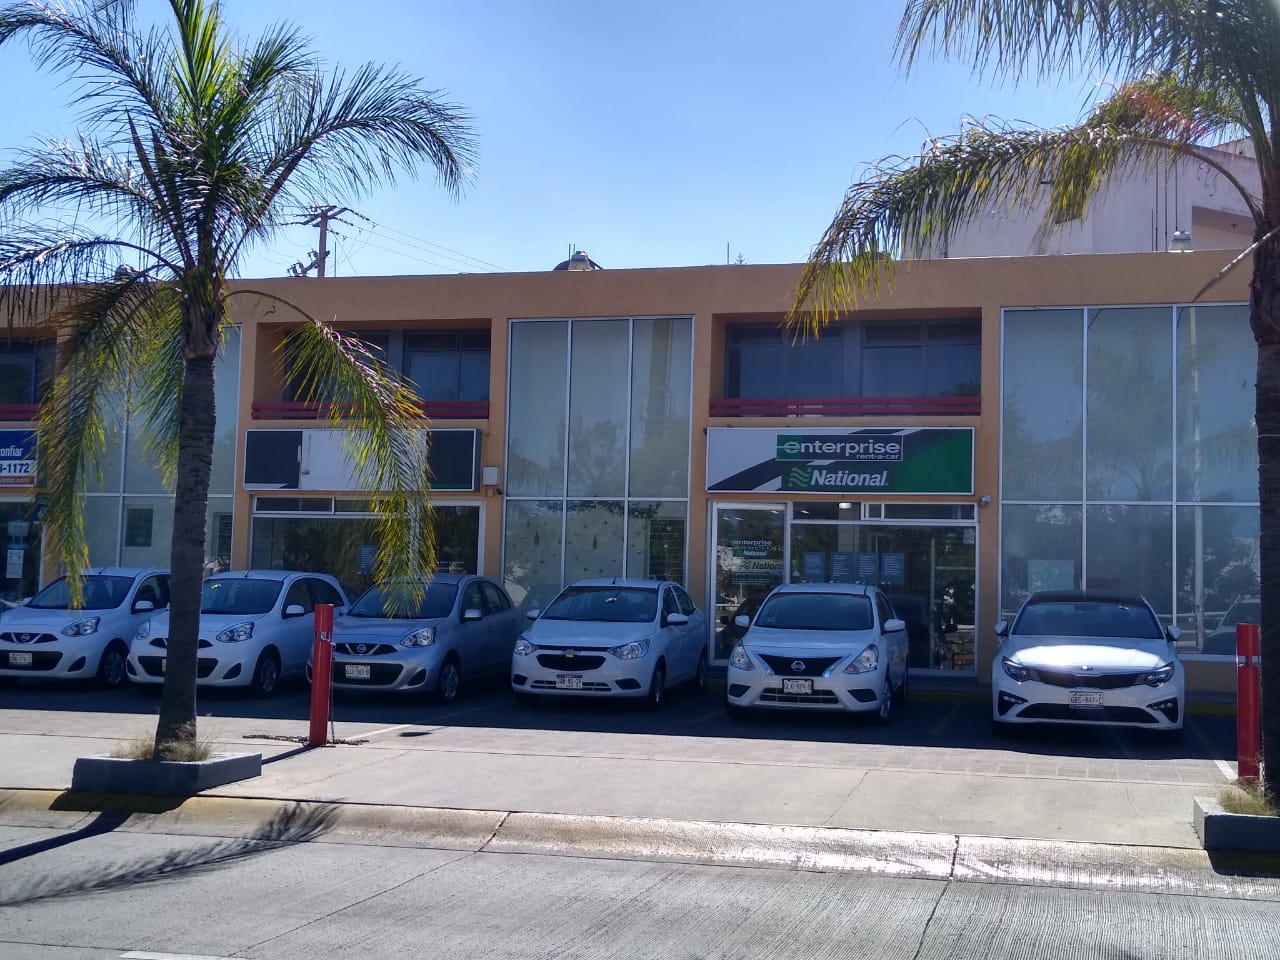 Renta de Autos en Guadalajara - Lázaro Cardenas Avenue